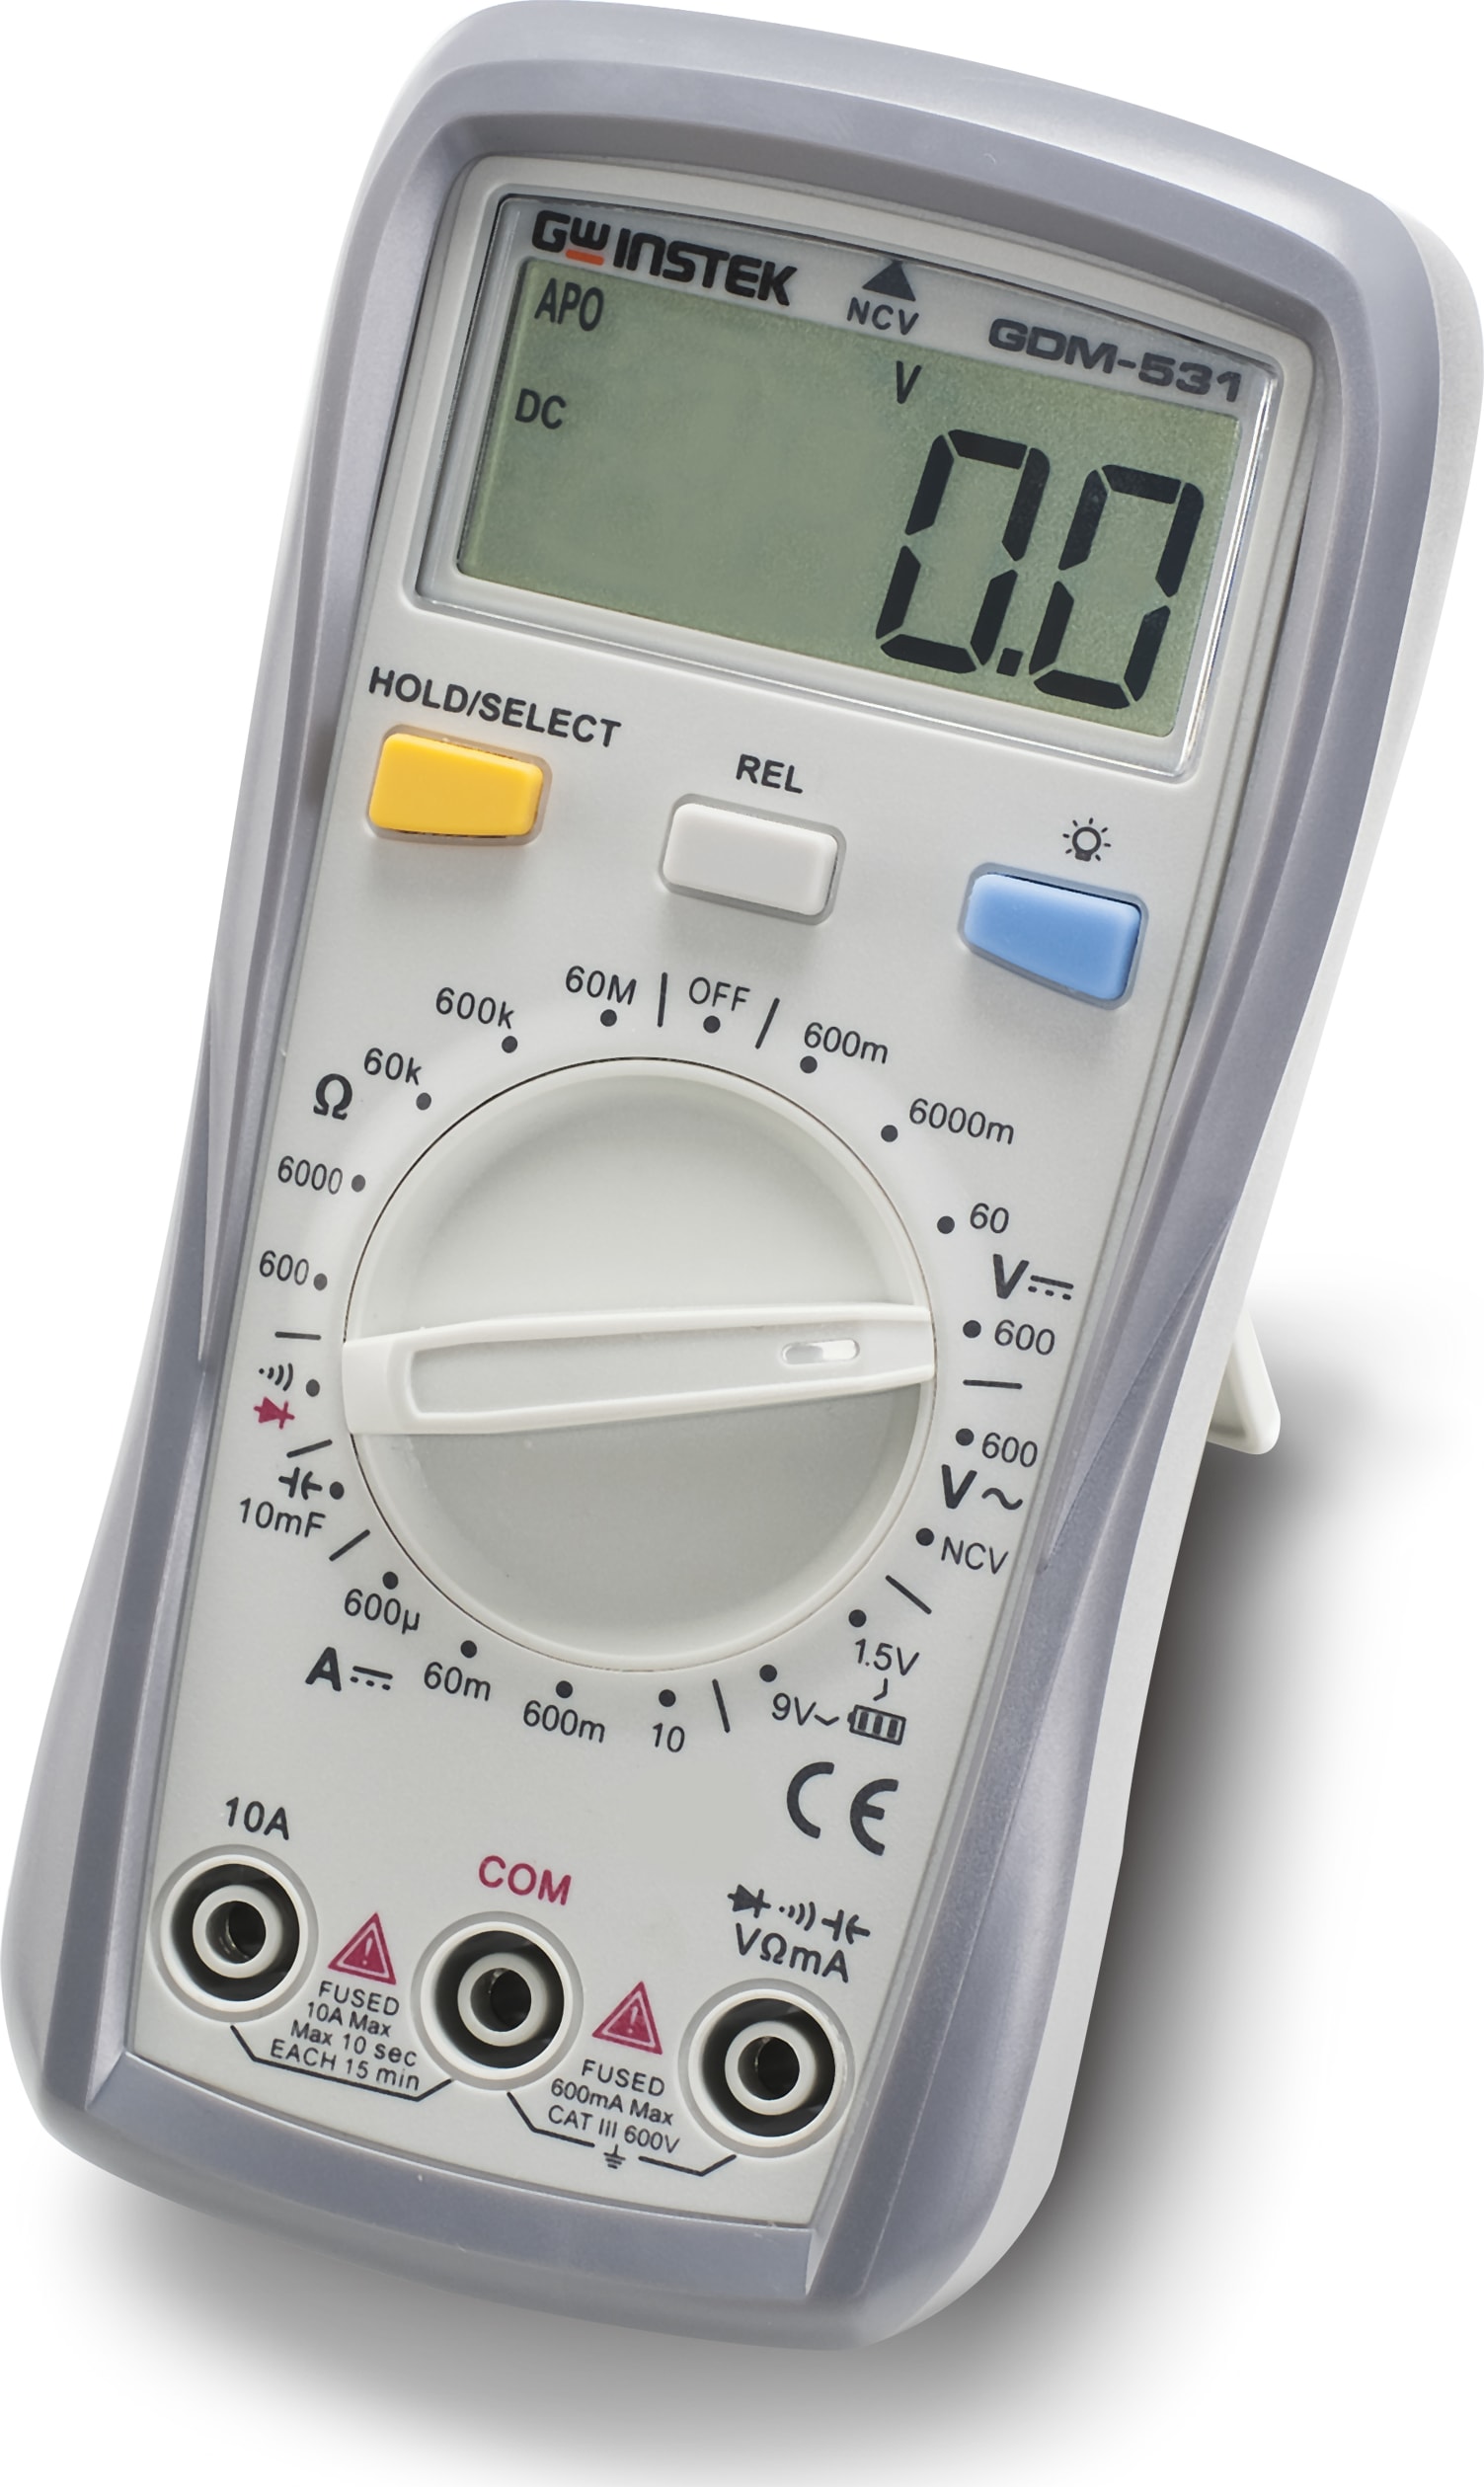 Instek GDM-531 - Handheld Digital Multimeter